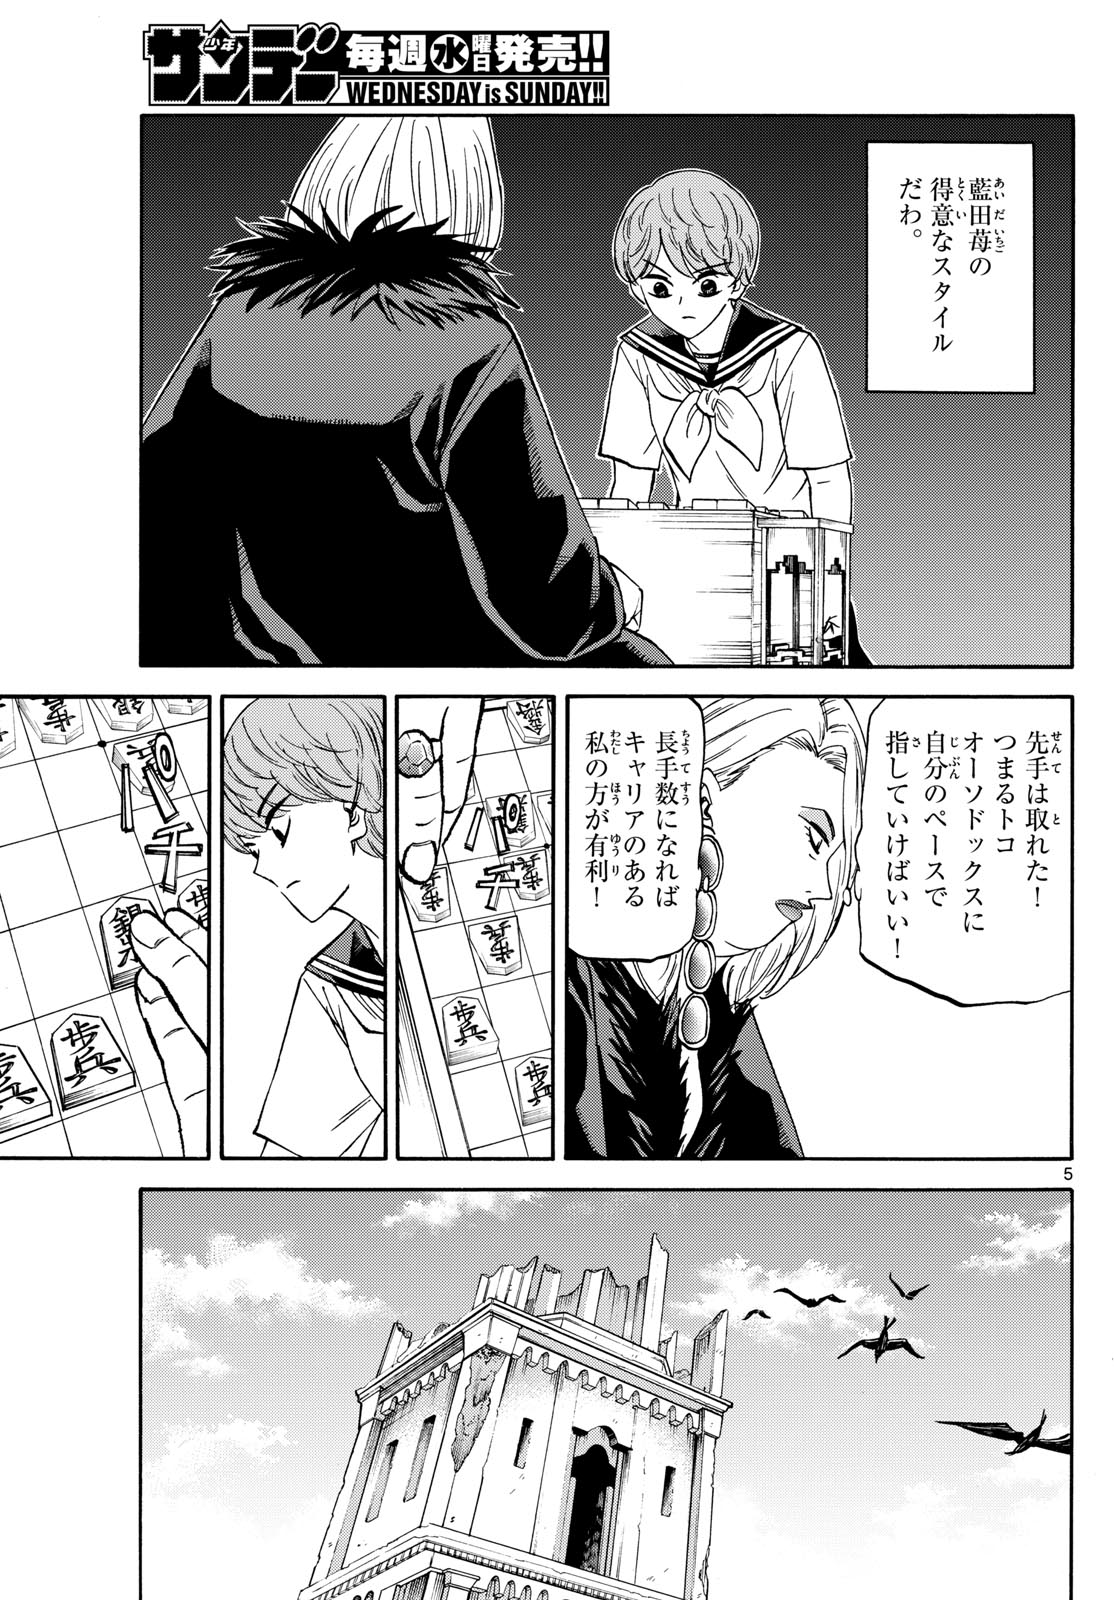 Tatsu to Ichigo - Chapter 192 - Page 5